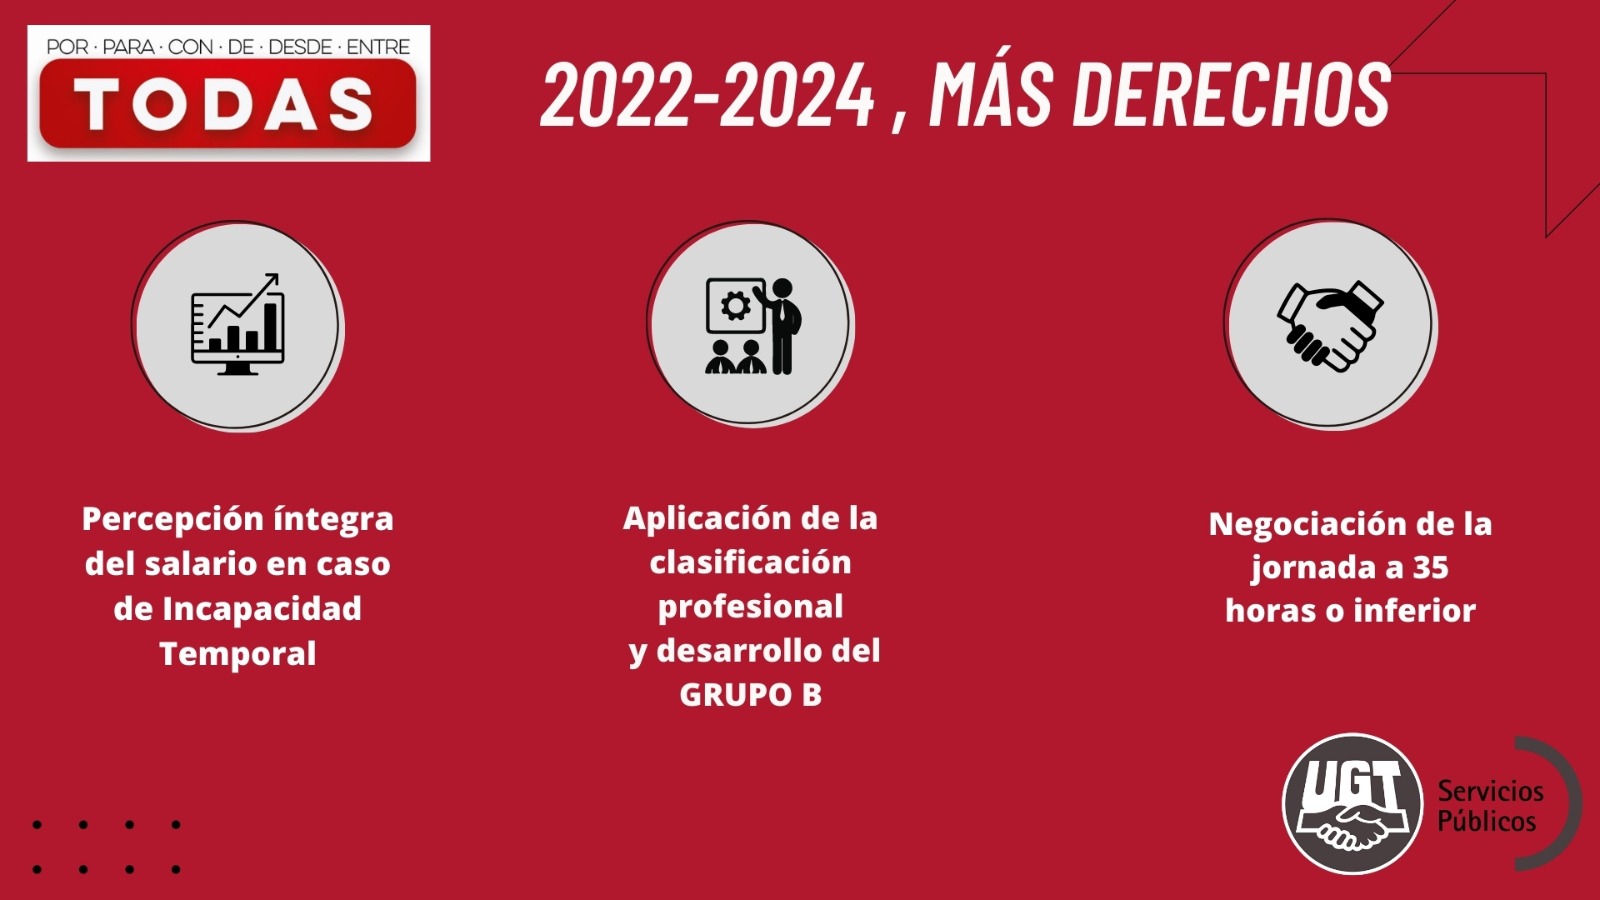 Acord 2022-2024 - 3